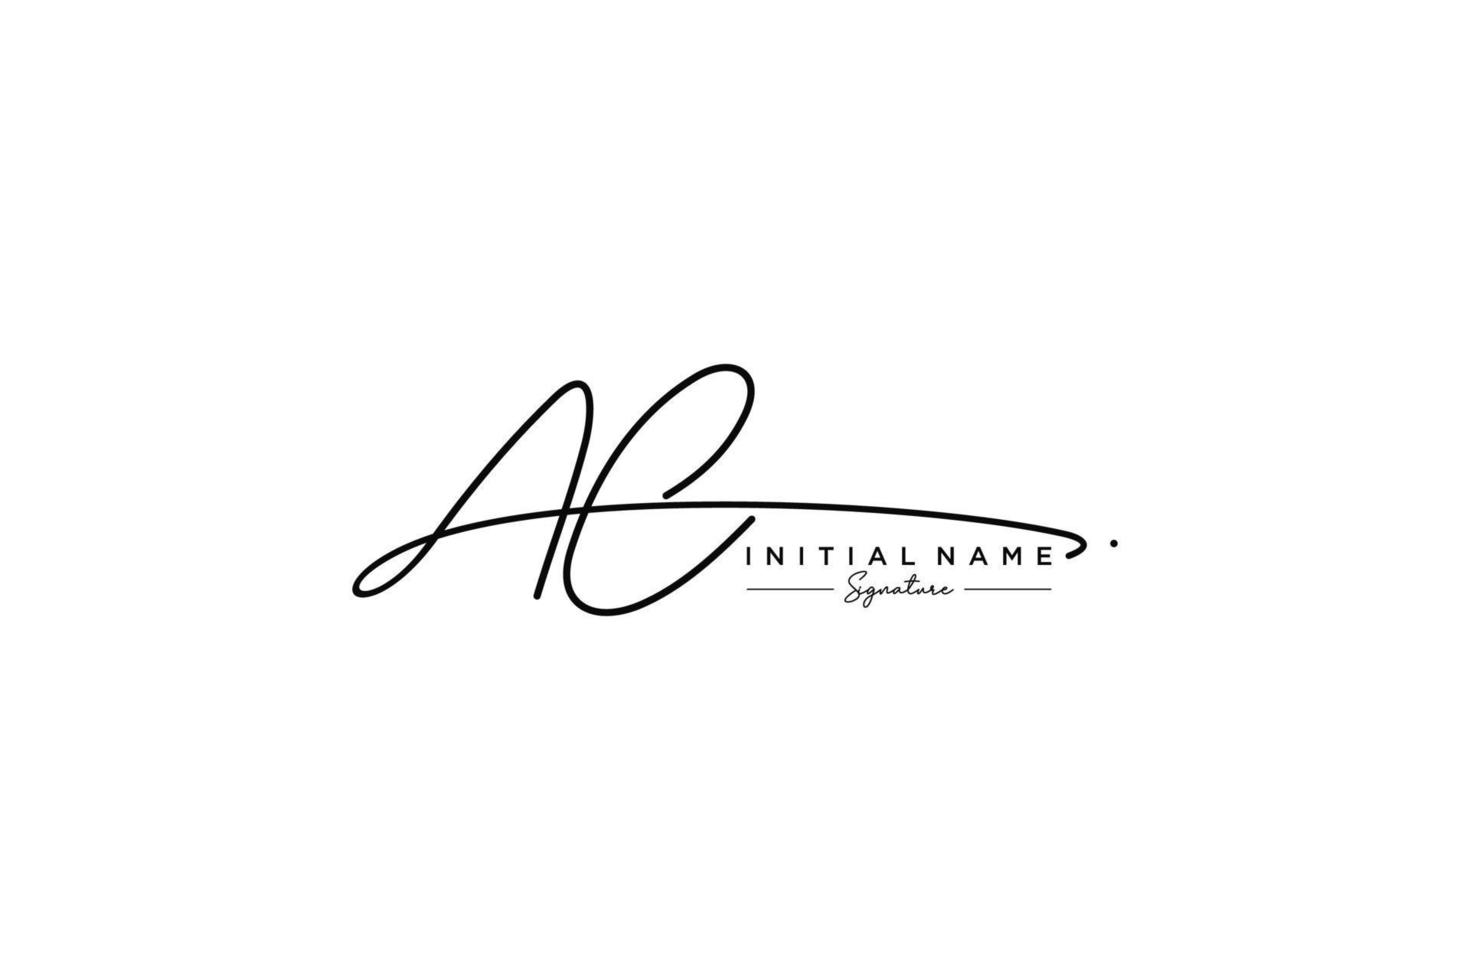 vector de plantilla de logotipo de firma ac inicial. ilustración de vector de letras de caligrafía dibujada a mano.